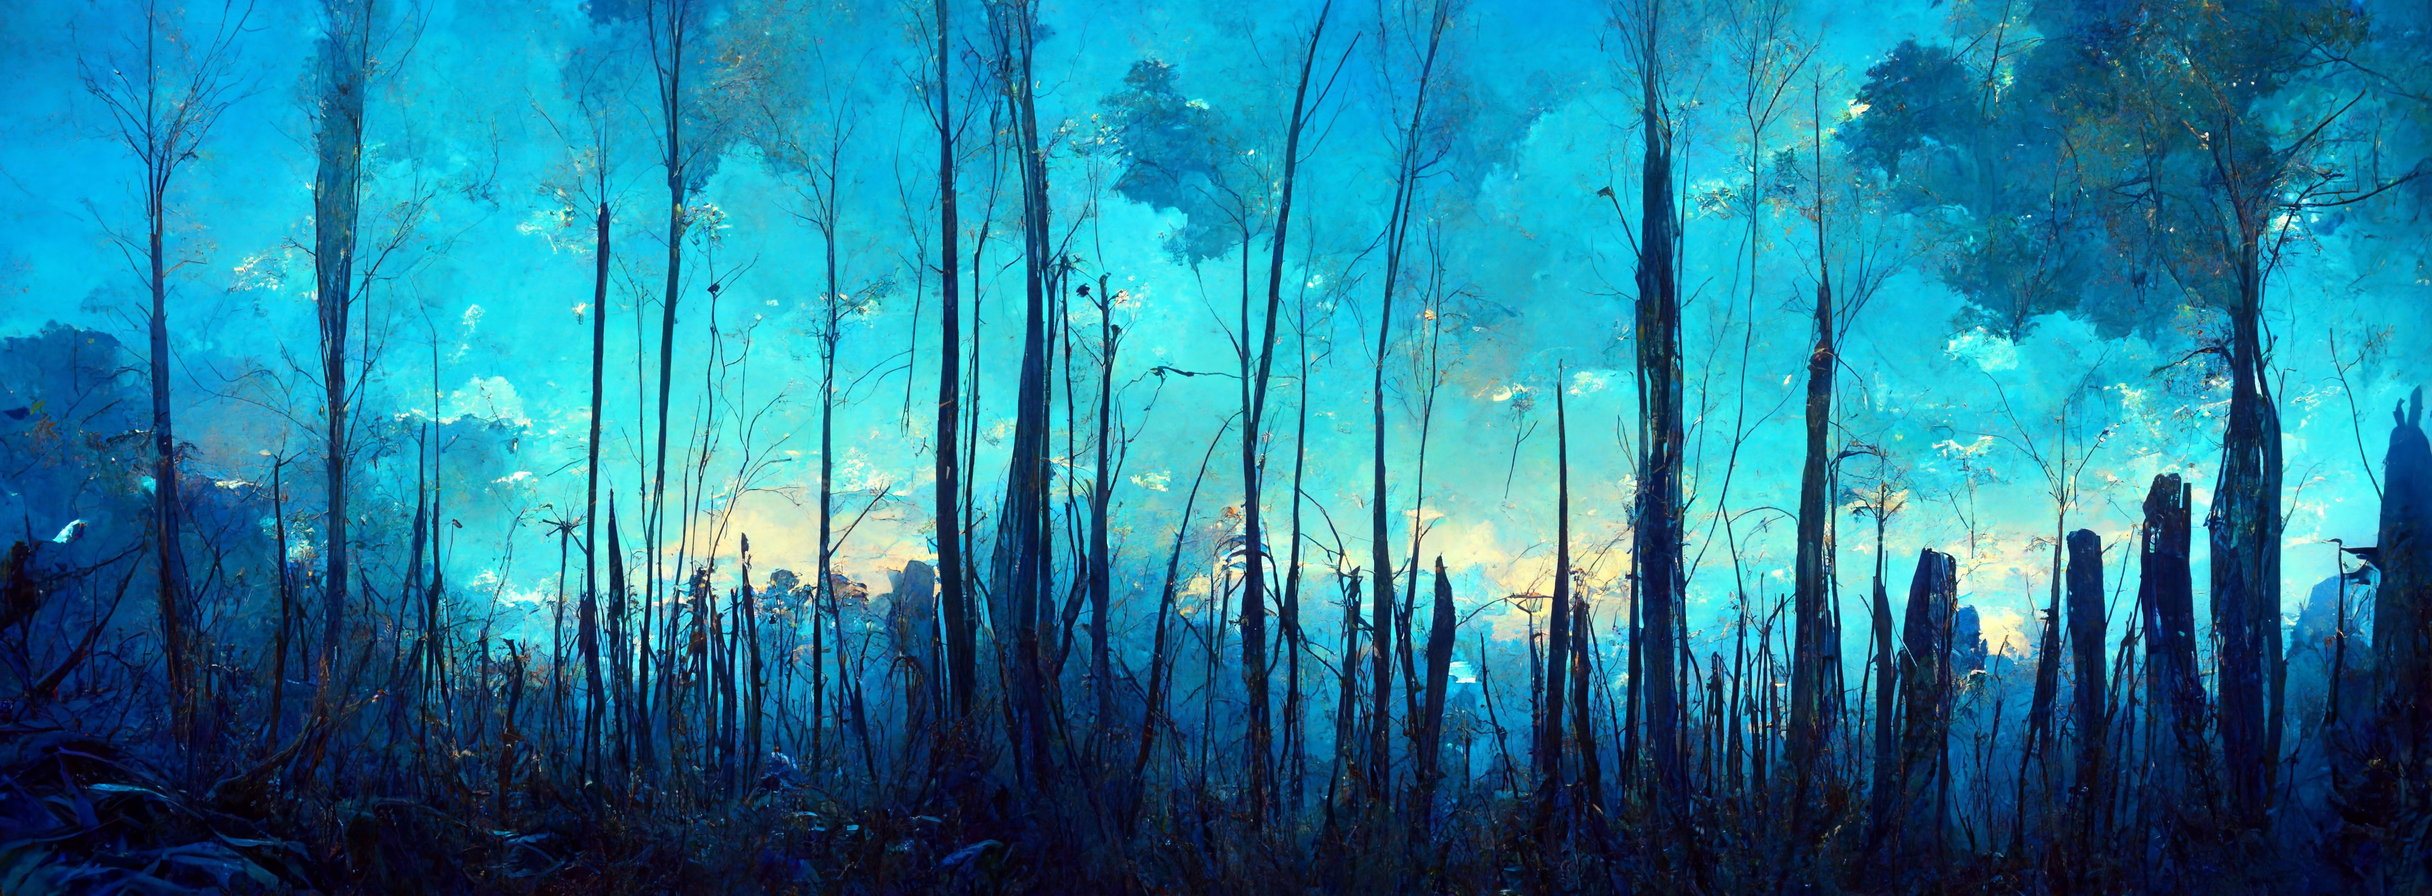 A blue landscape